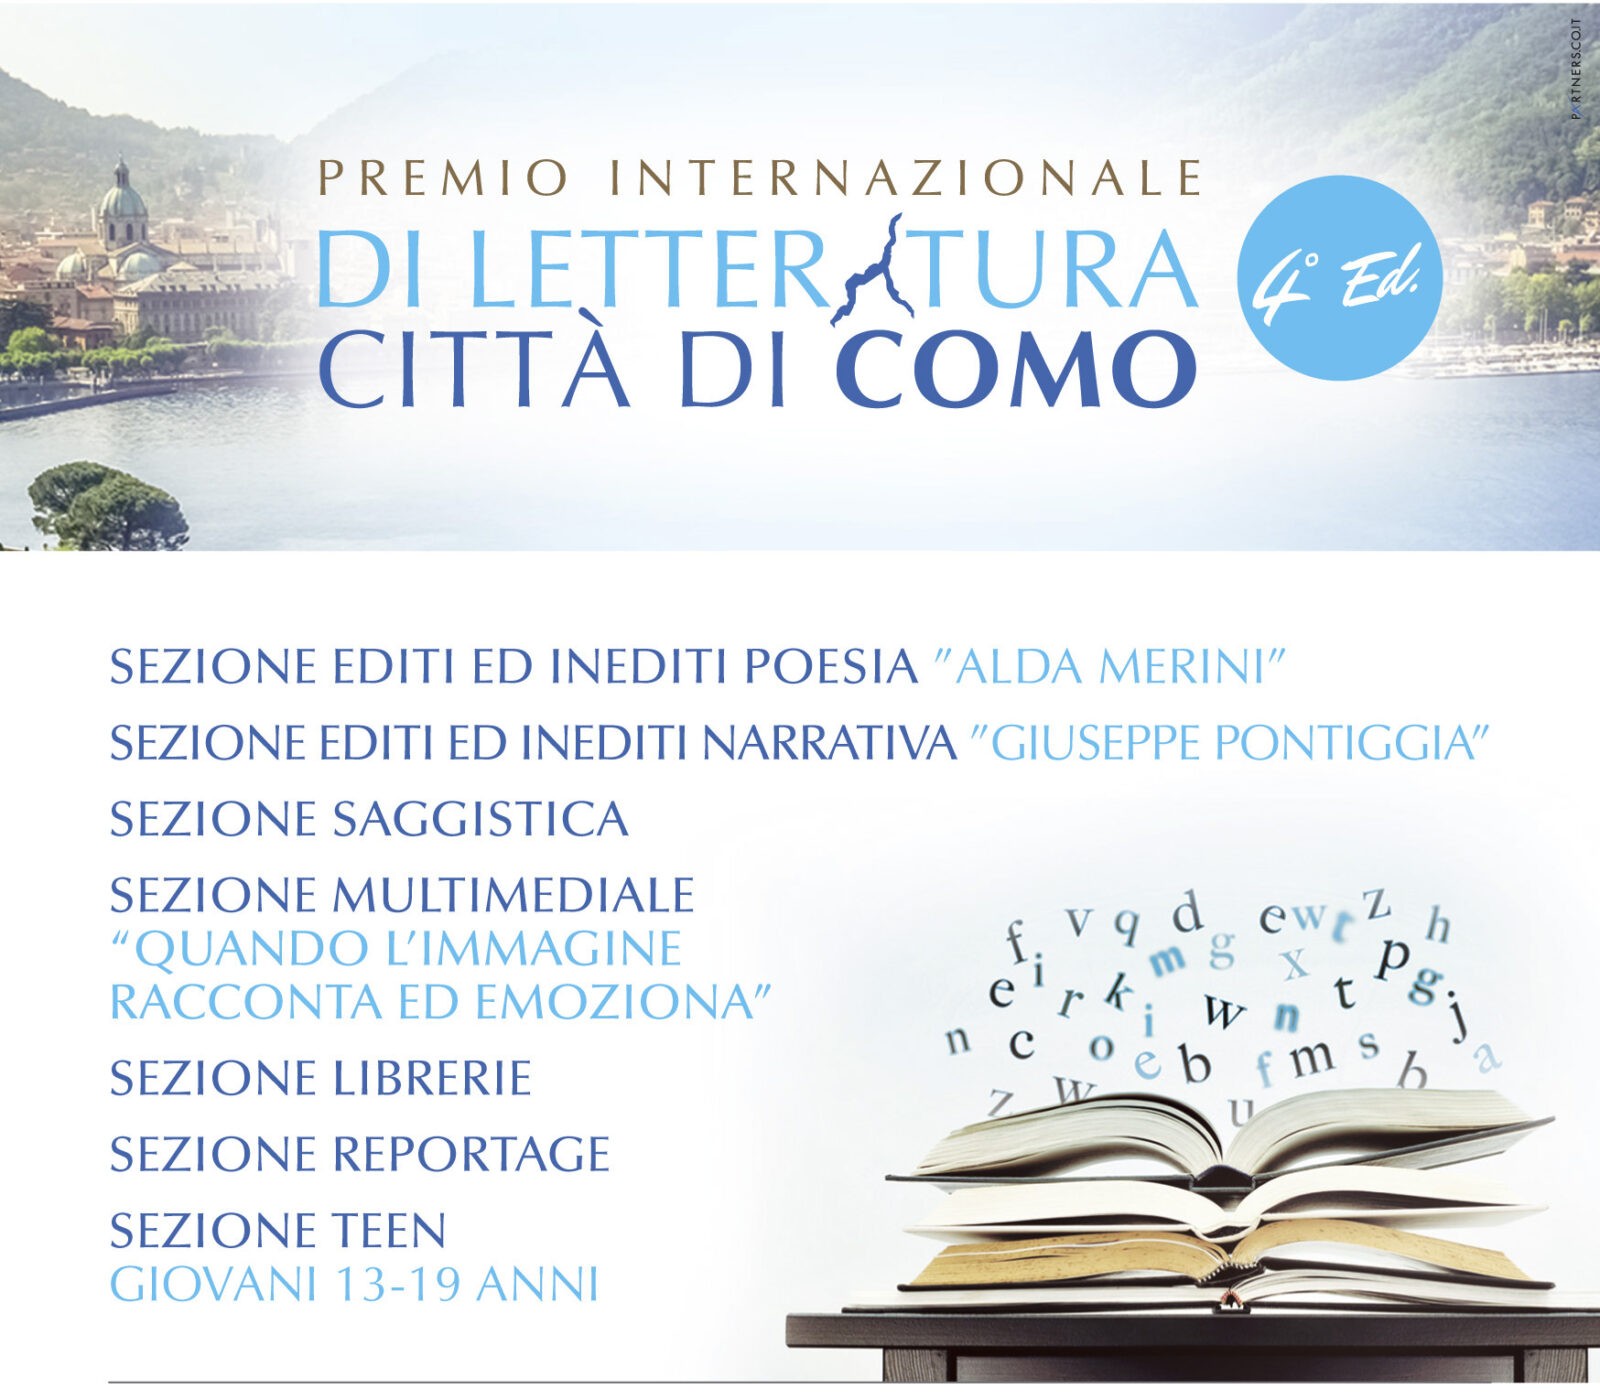 Como. 4a ed. Premio Internazionale di Letteratura Città di Como 2017: oltre 2mila partecipanti